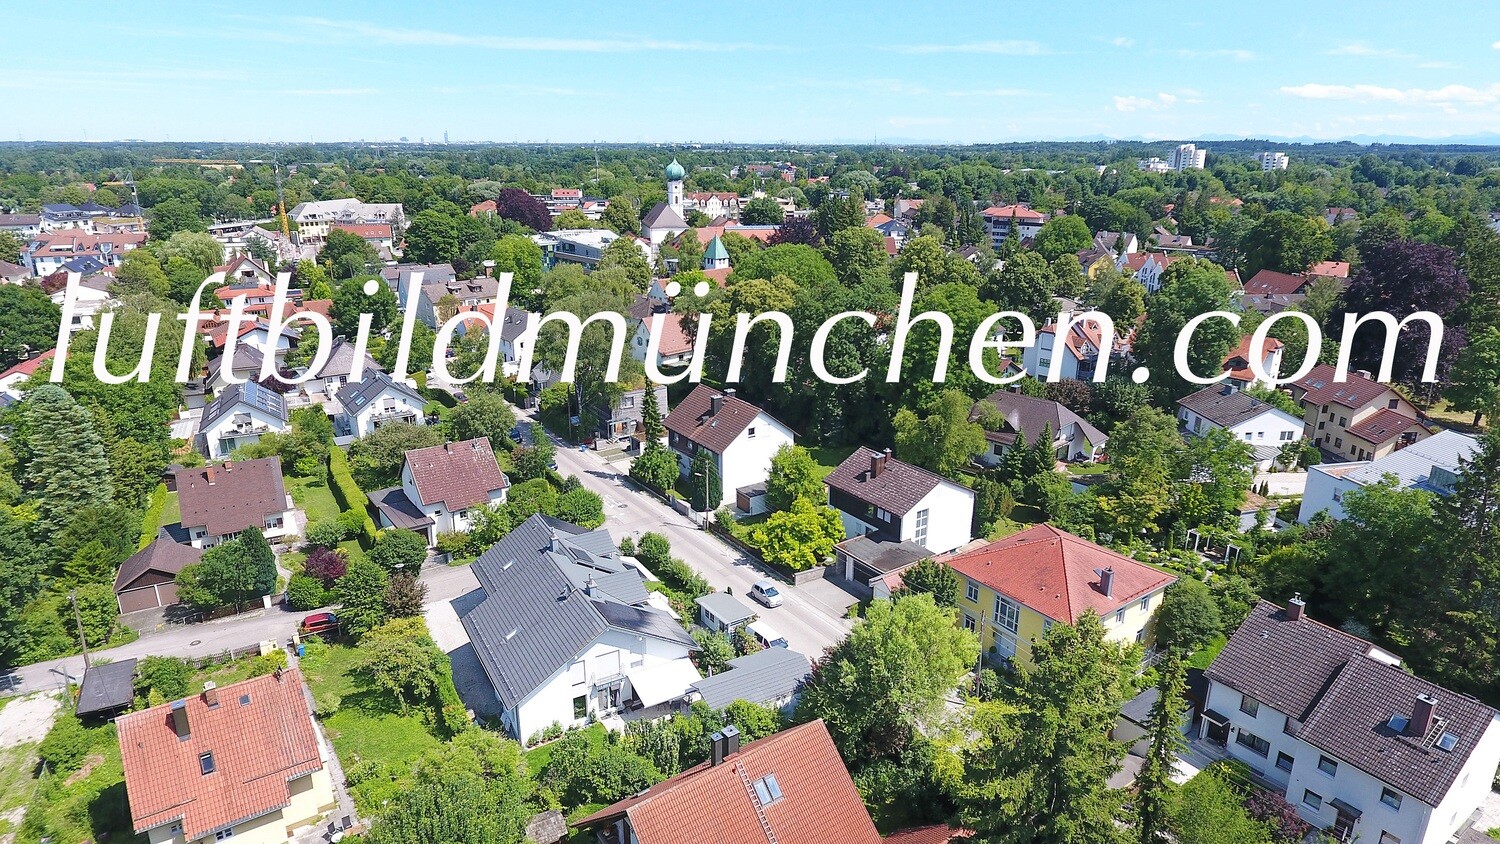 Luftbildfoto, Luftaufnahme, Luftbild, Foto mit Drohne, Foto von oben, Wohngebiet, Gröbenzell, Kirche, Zentrum, Ortskern,